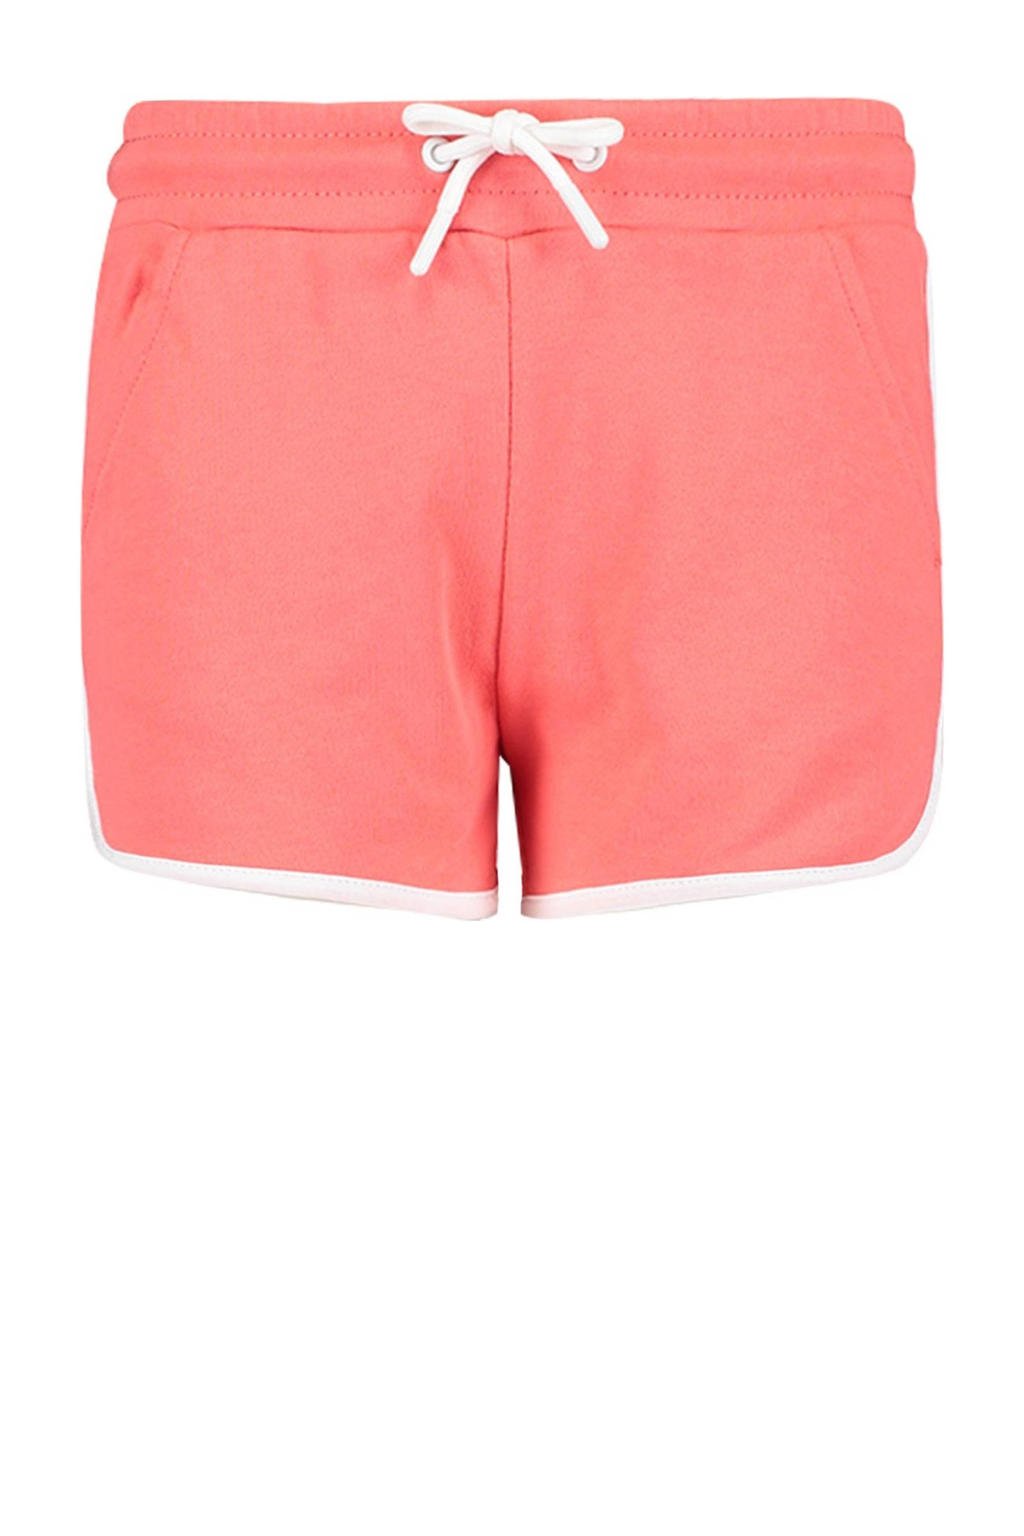 Roze meisjes CoolCat Junior short Nora CG van katoen met regular waist en elastische tailleband met koord